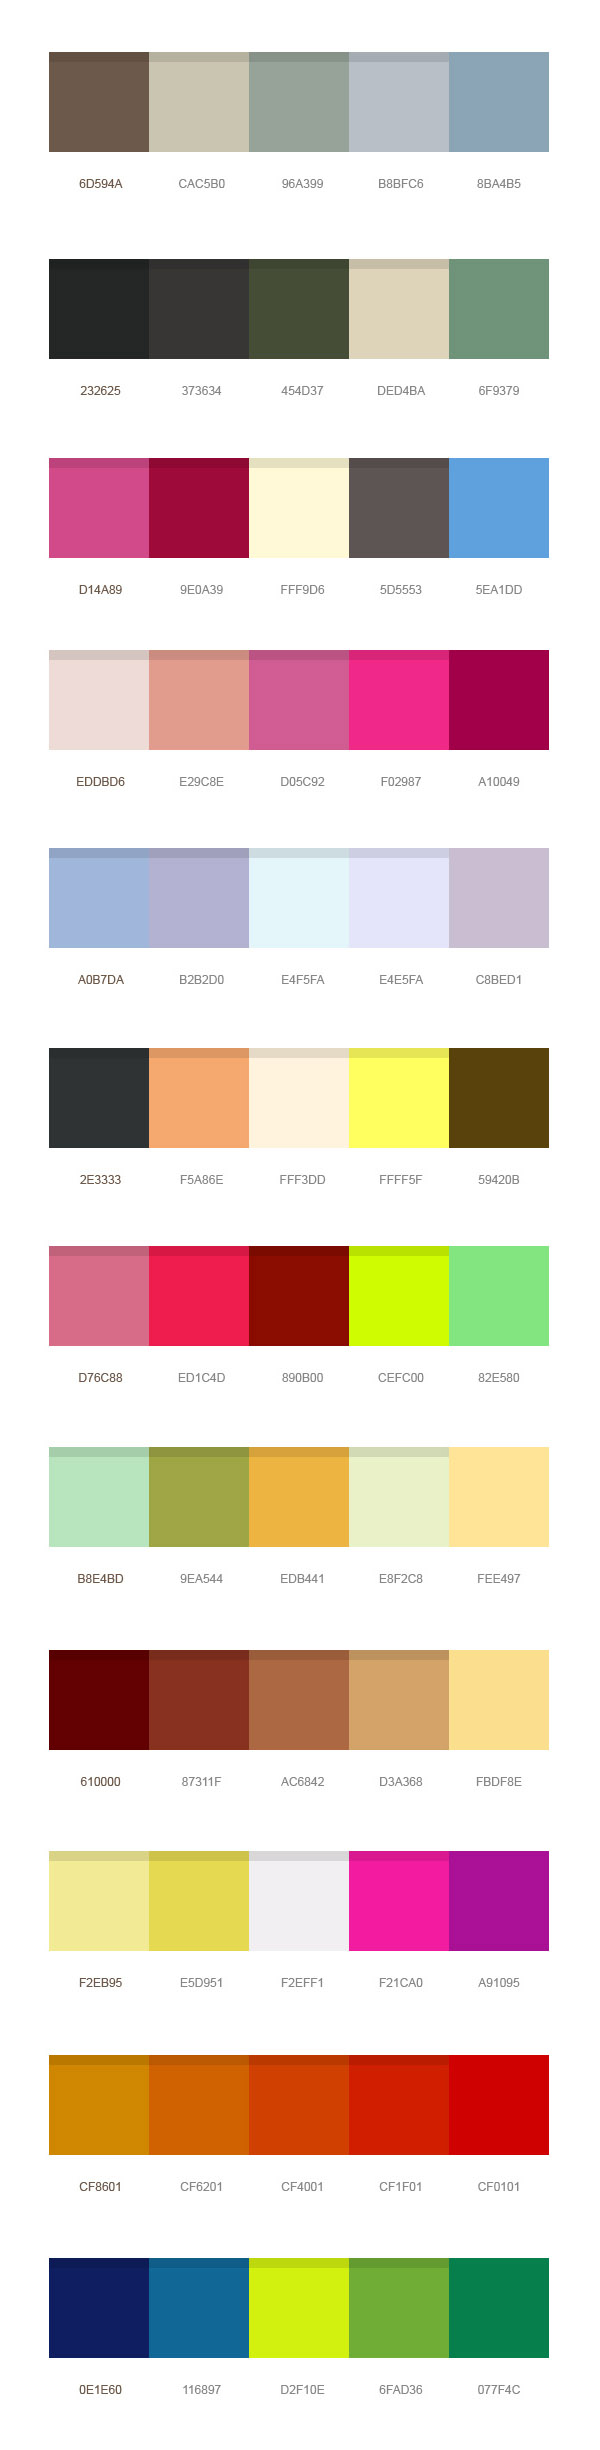 find image color palette